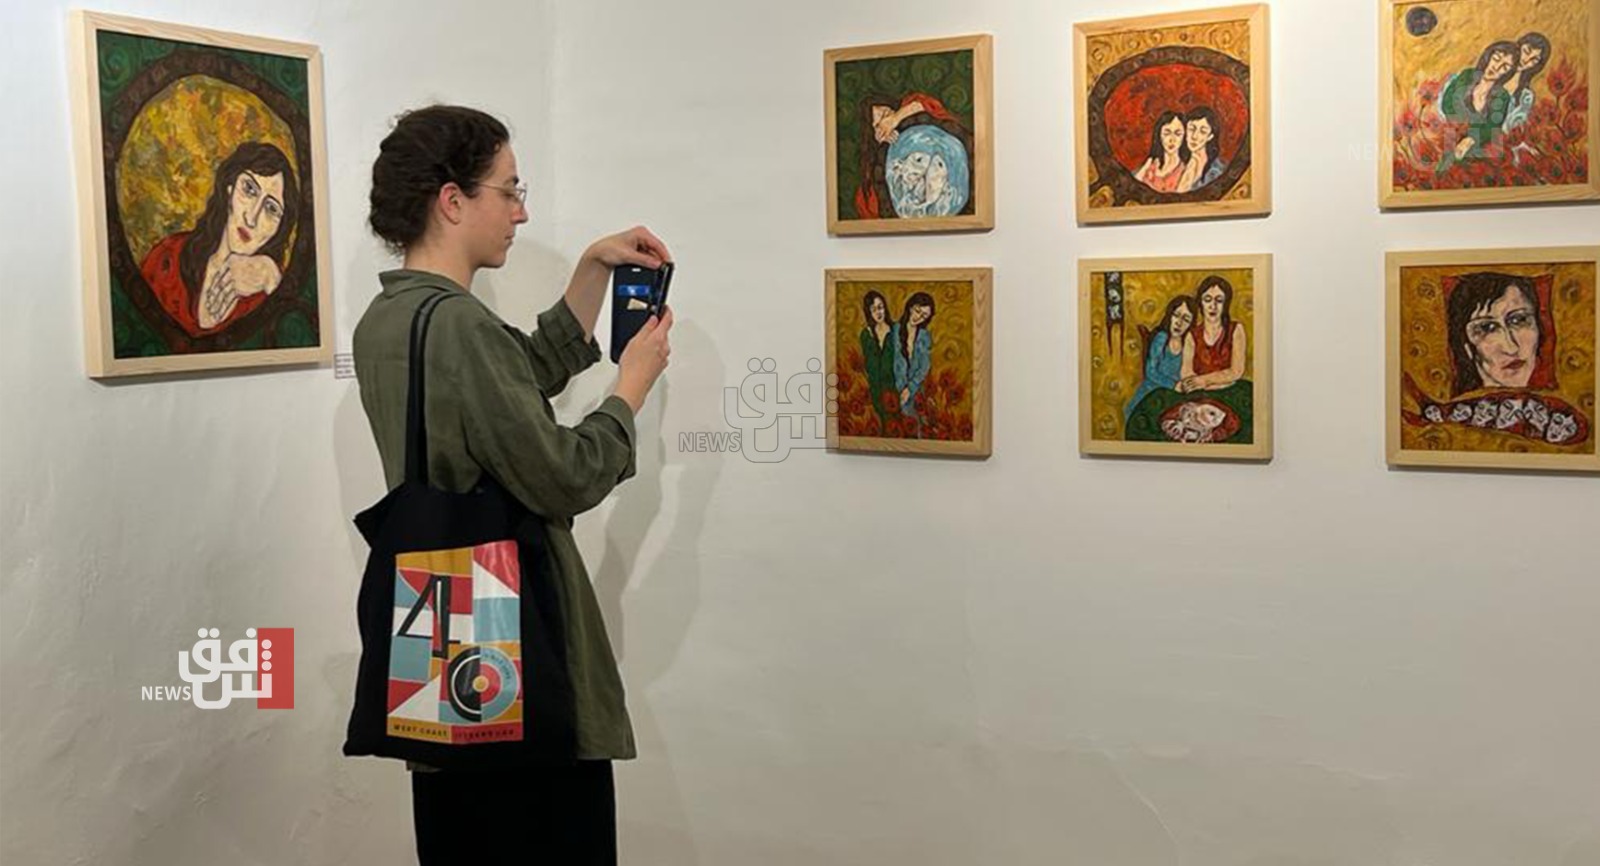 قضايا المرأة في معرض فني باربيل (صور)